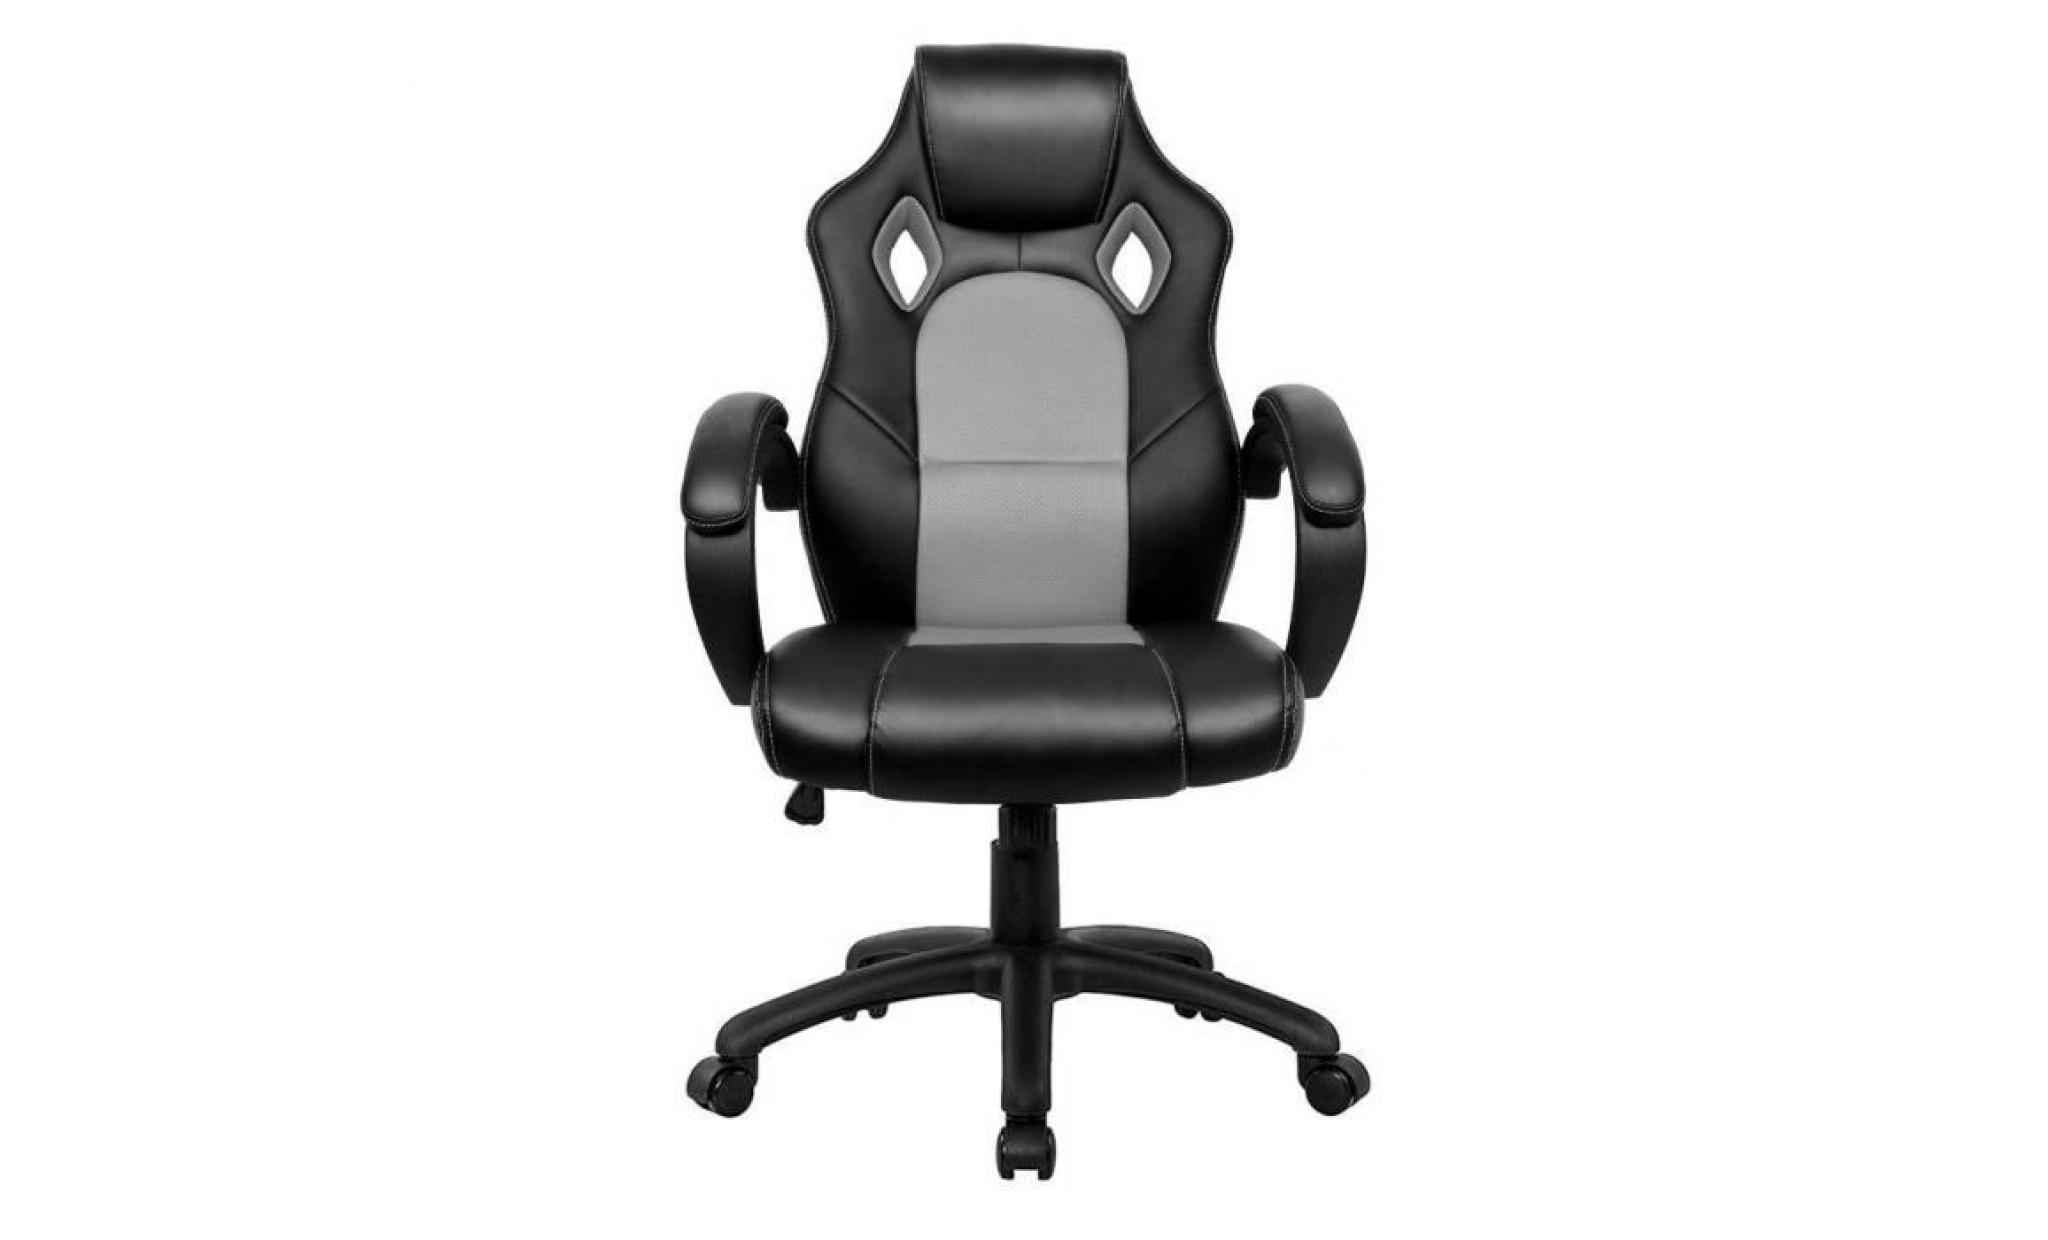 chaise de bureau gaming chaise   moderne confortable ergonomique en similicuir pu   hauteur réglable   gris   intimate wm heart pas cher